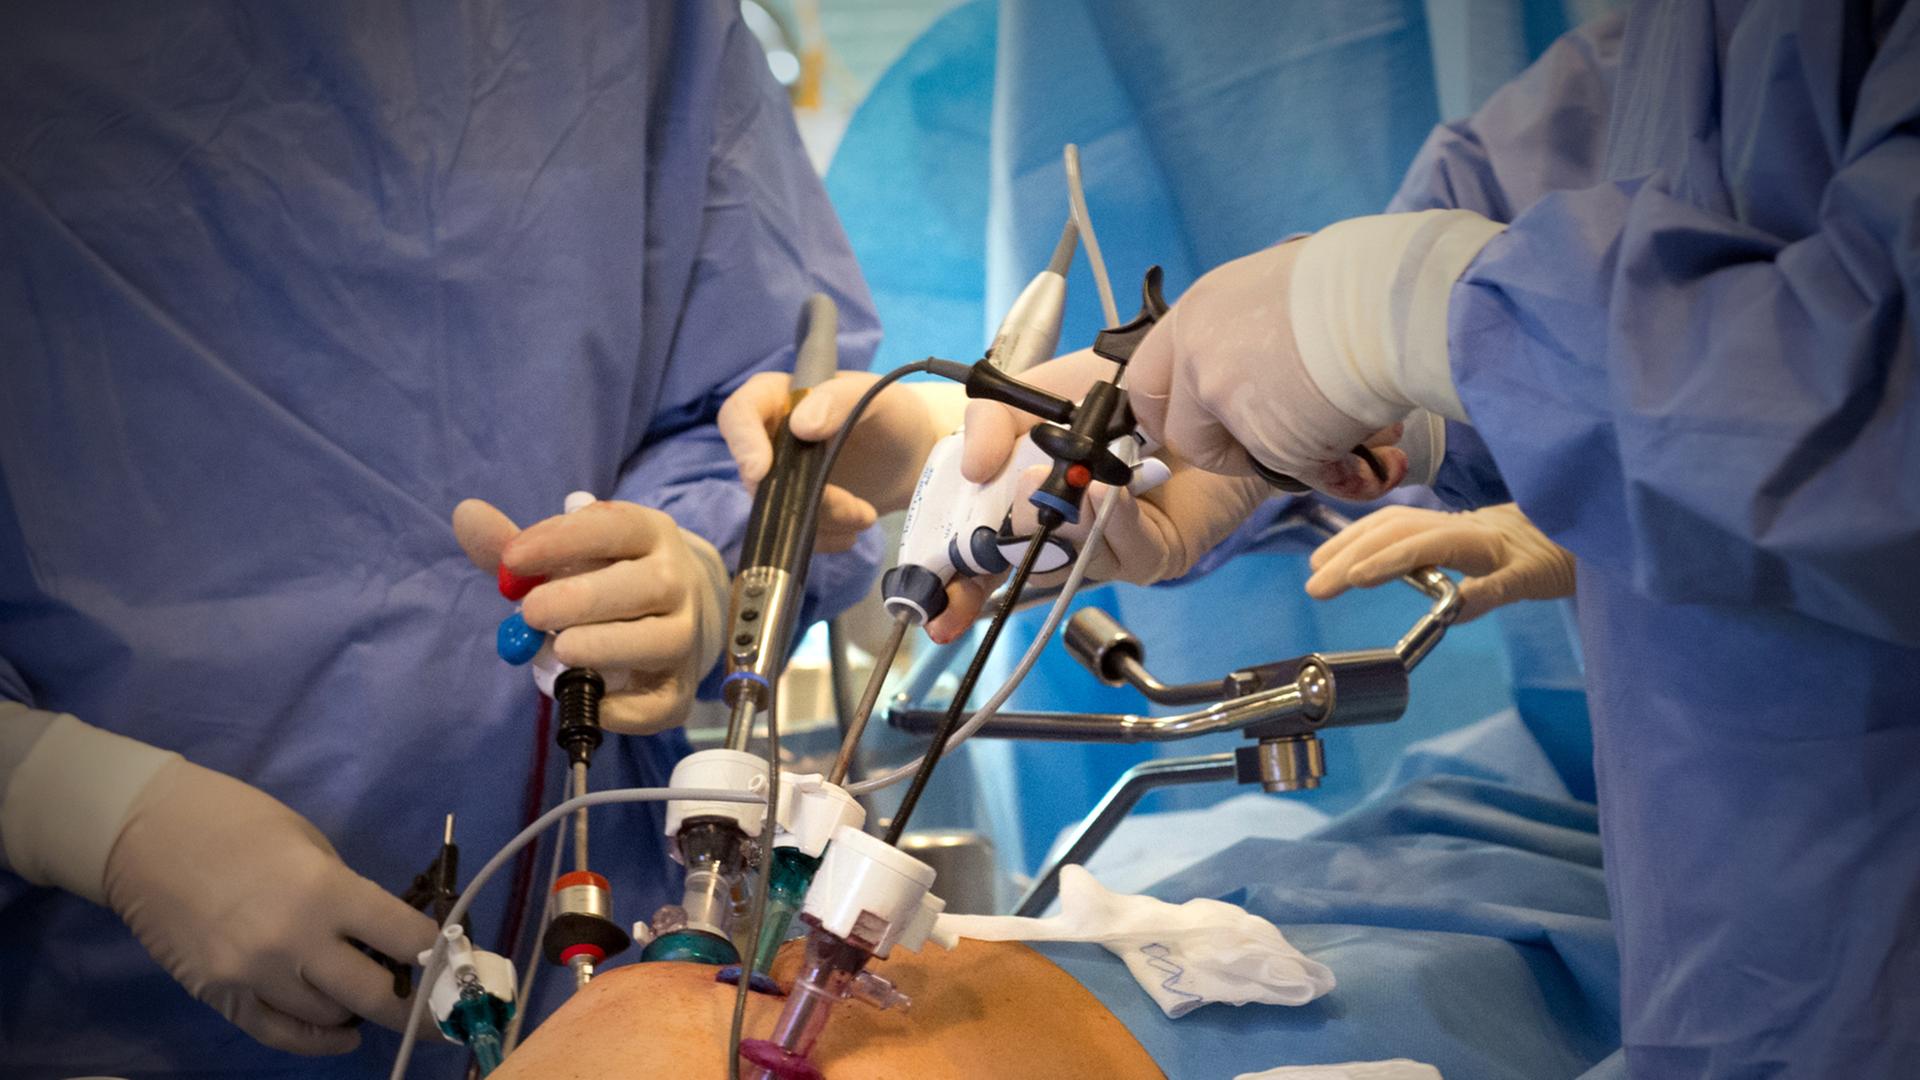 Blick auf einen Operationstisch, auf dem ein Patient liegt, dessen Prostatabereich zu sehen ist. Um in herum drei in blaue Kittel gekleidetes Krankenhaus-/Operationspersonal mit Geräten zur Operation.